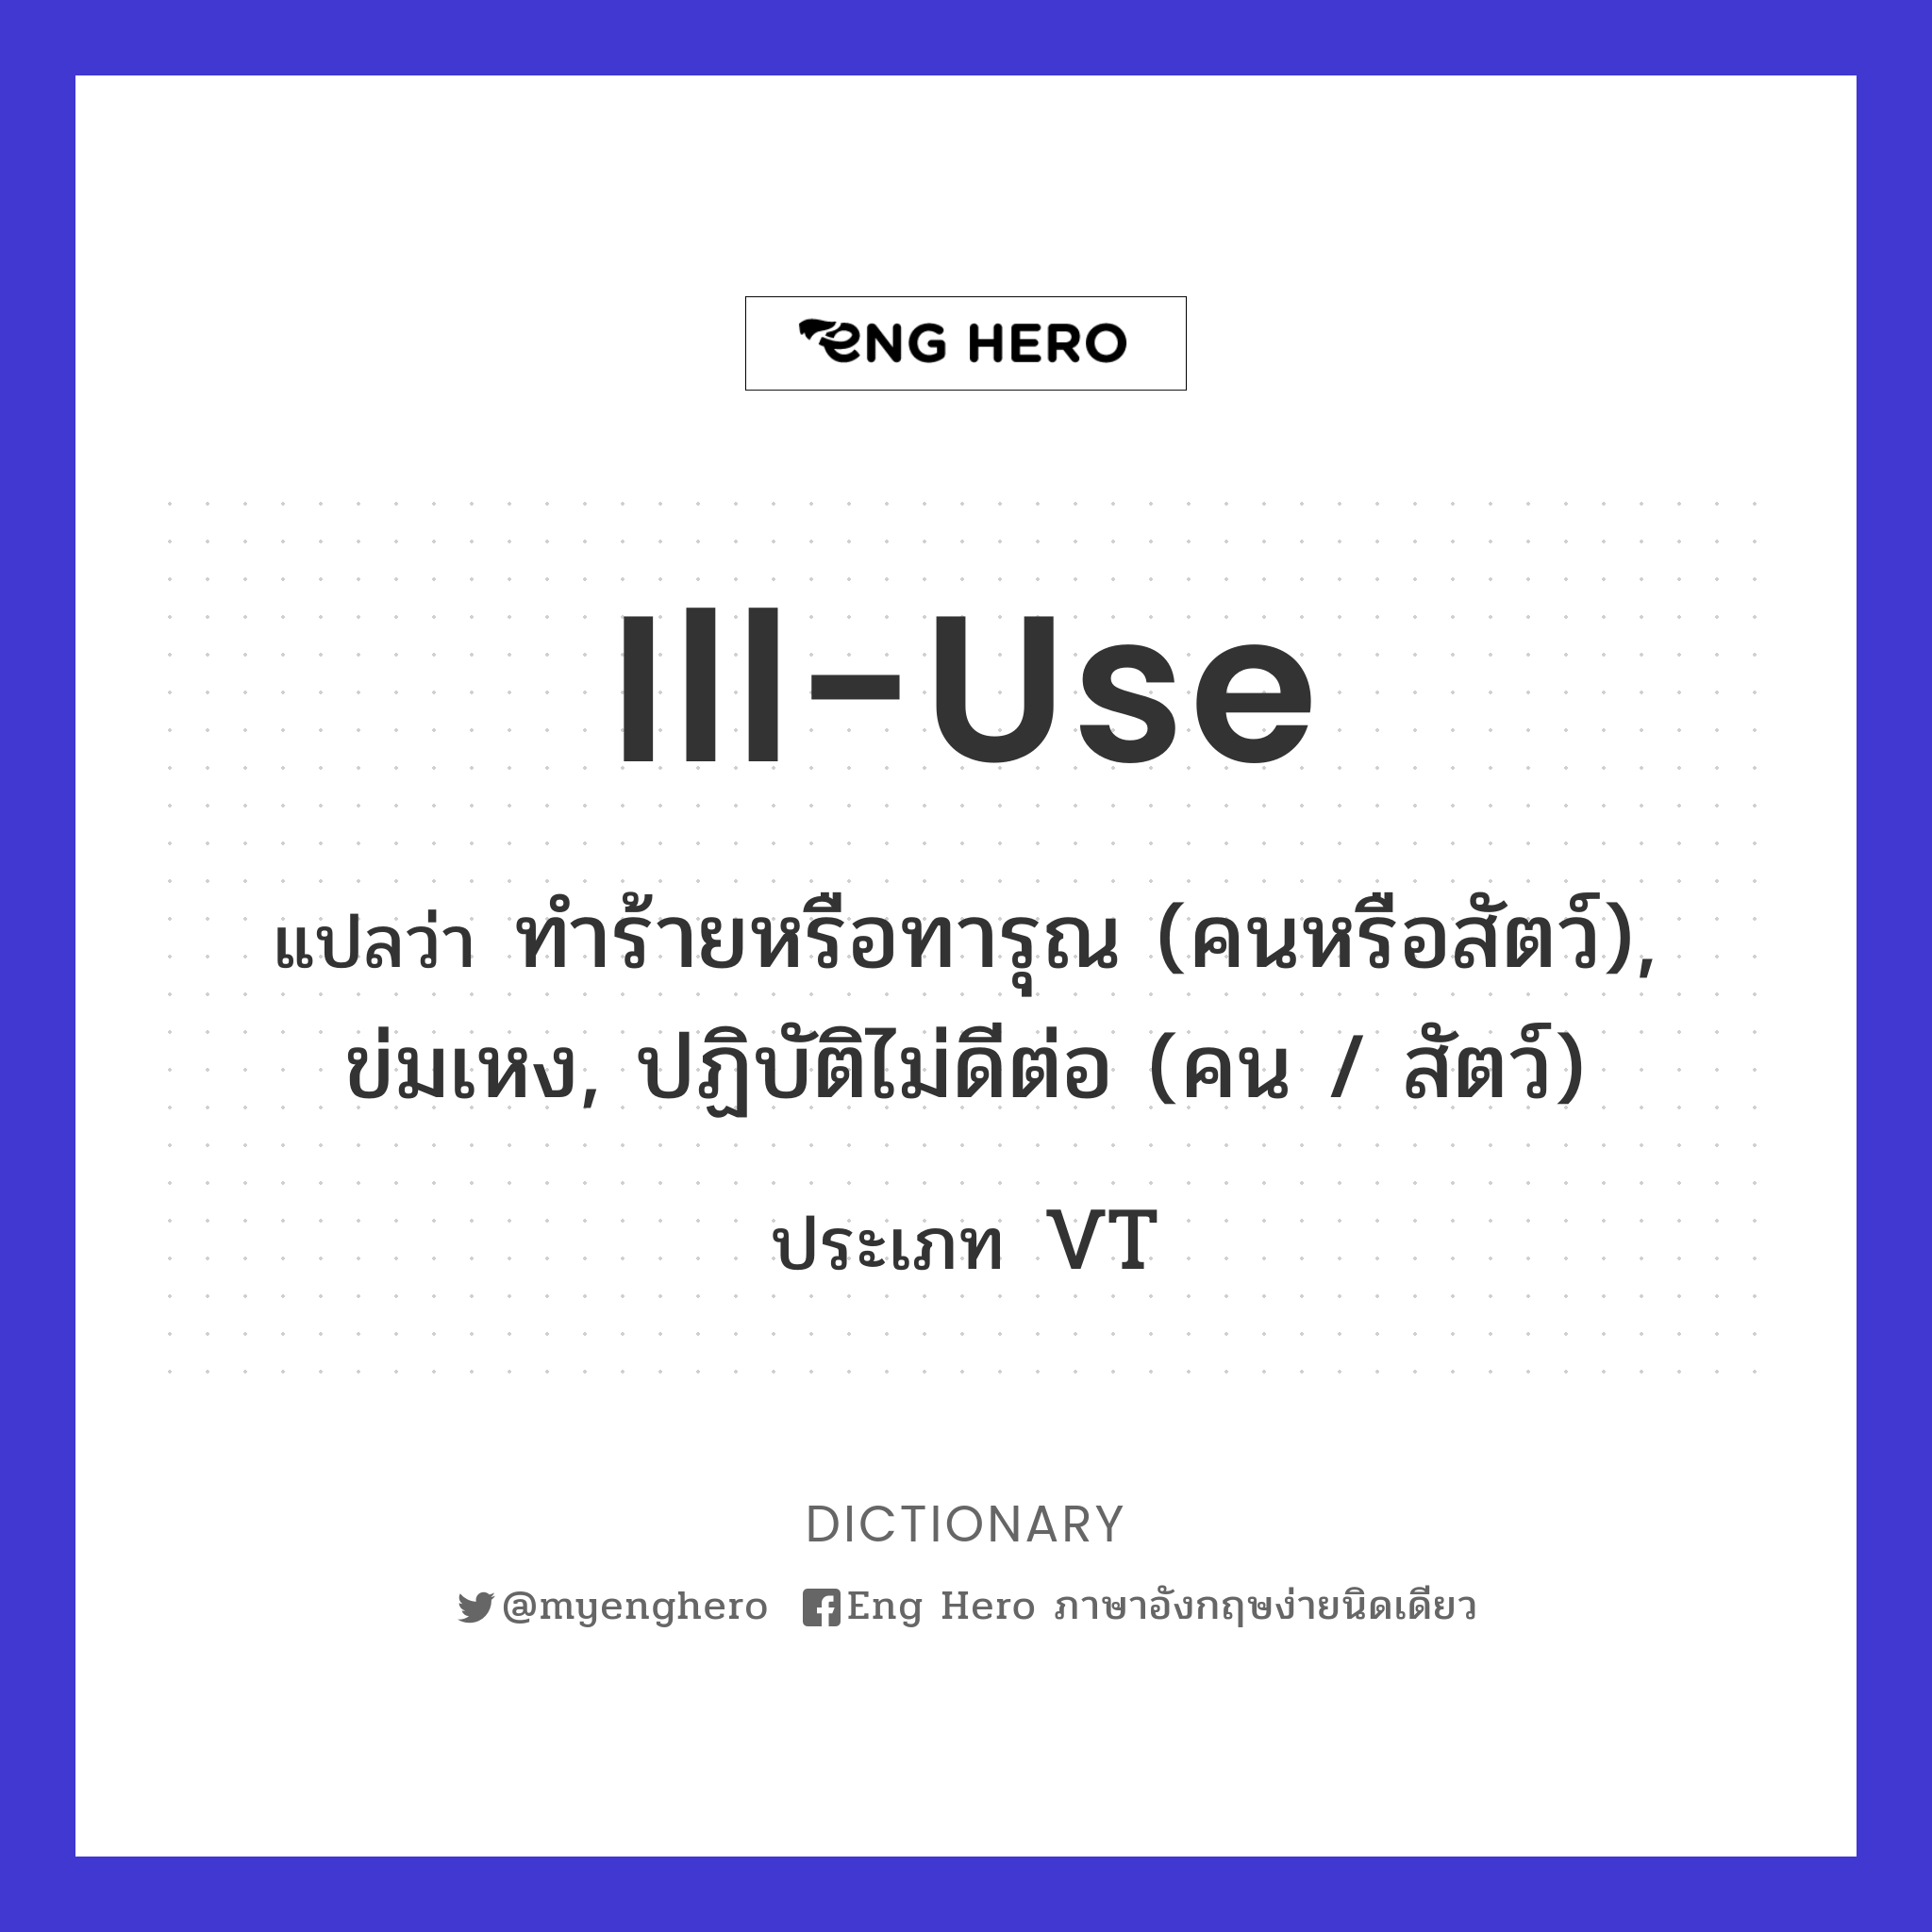 ill-use